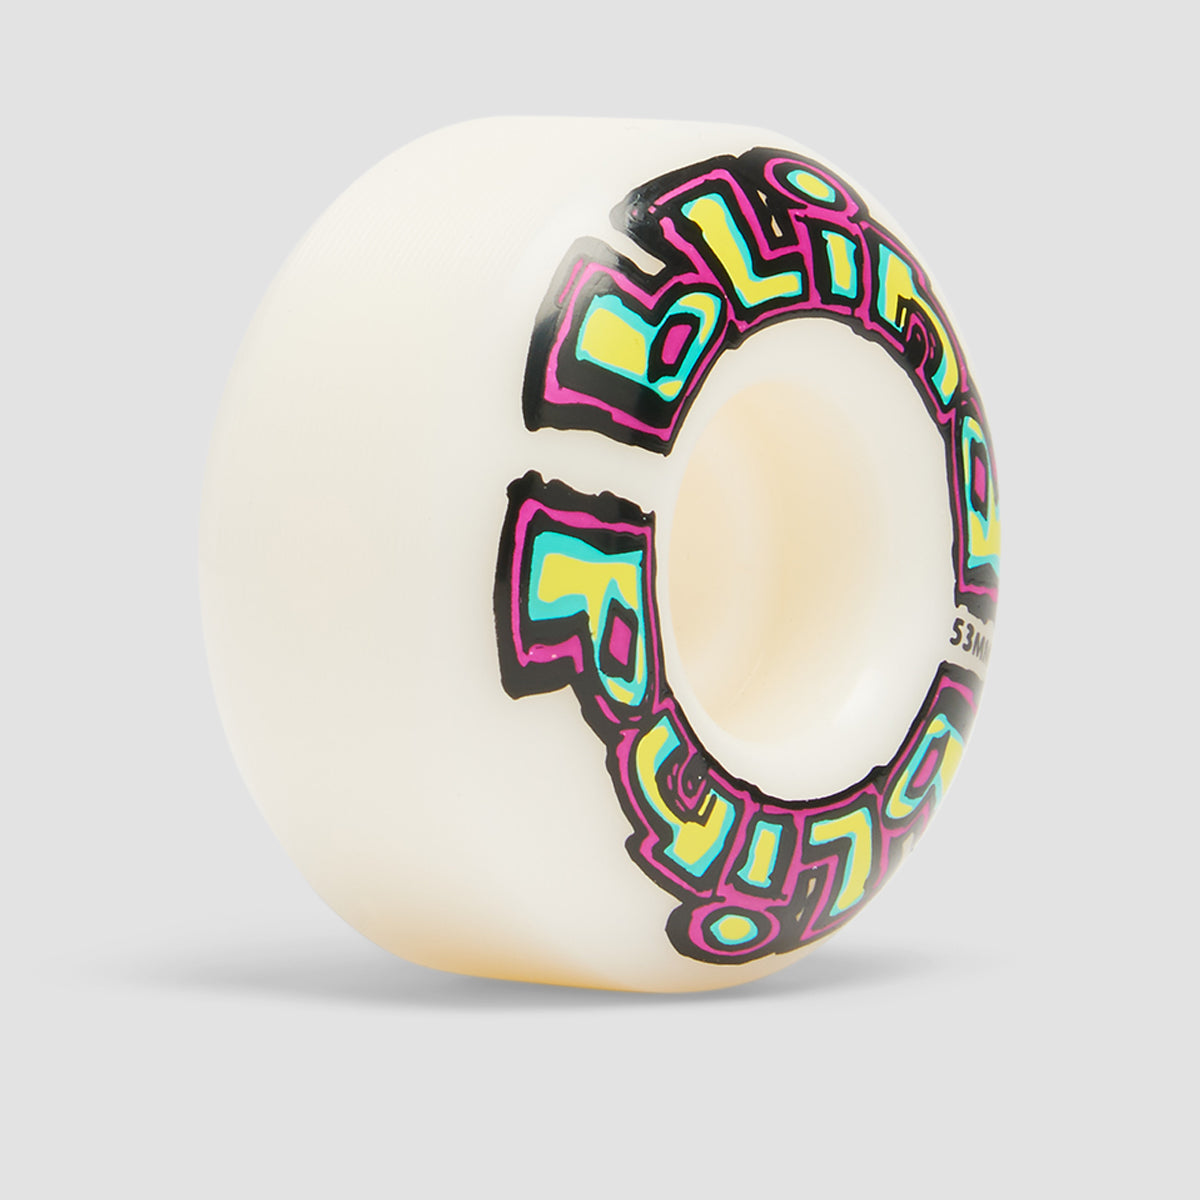 Blind OG Wrap Skateboard Wheels Purple/Teal 53mm